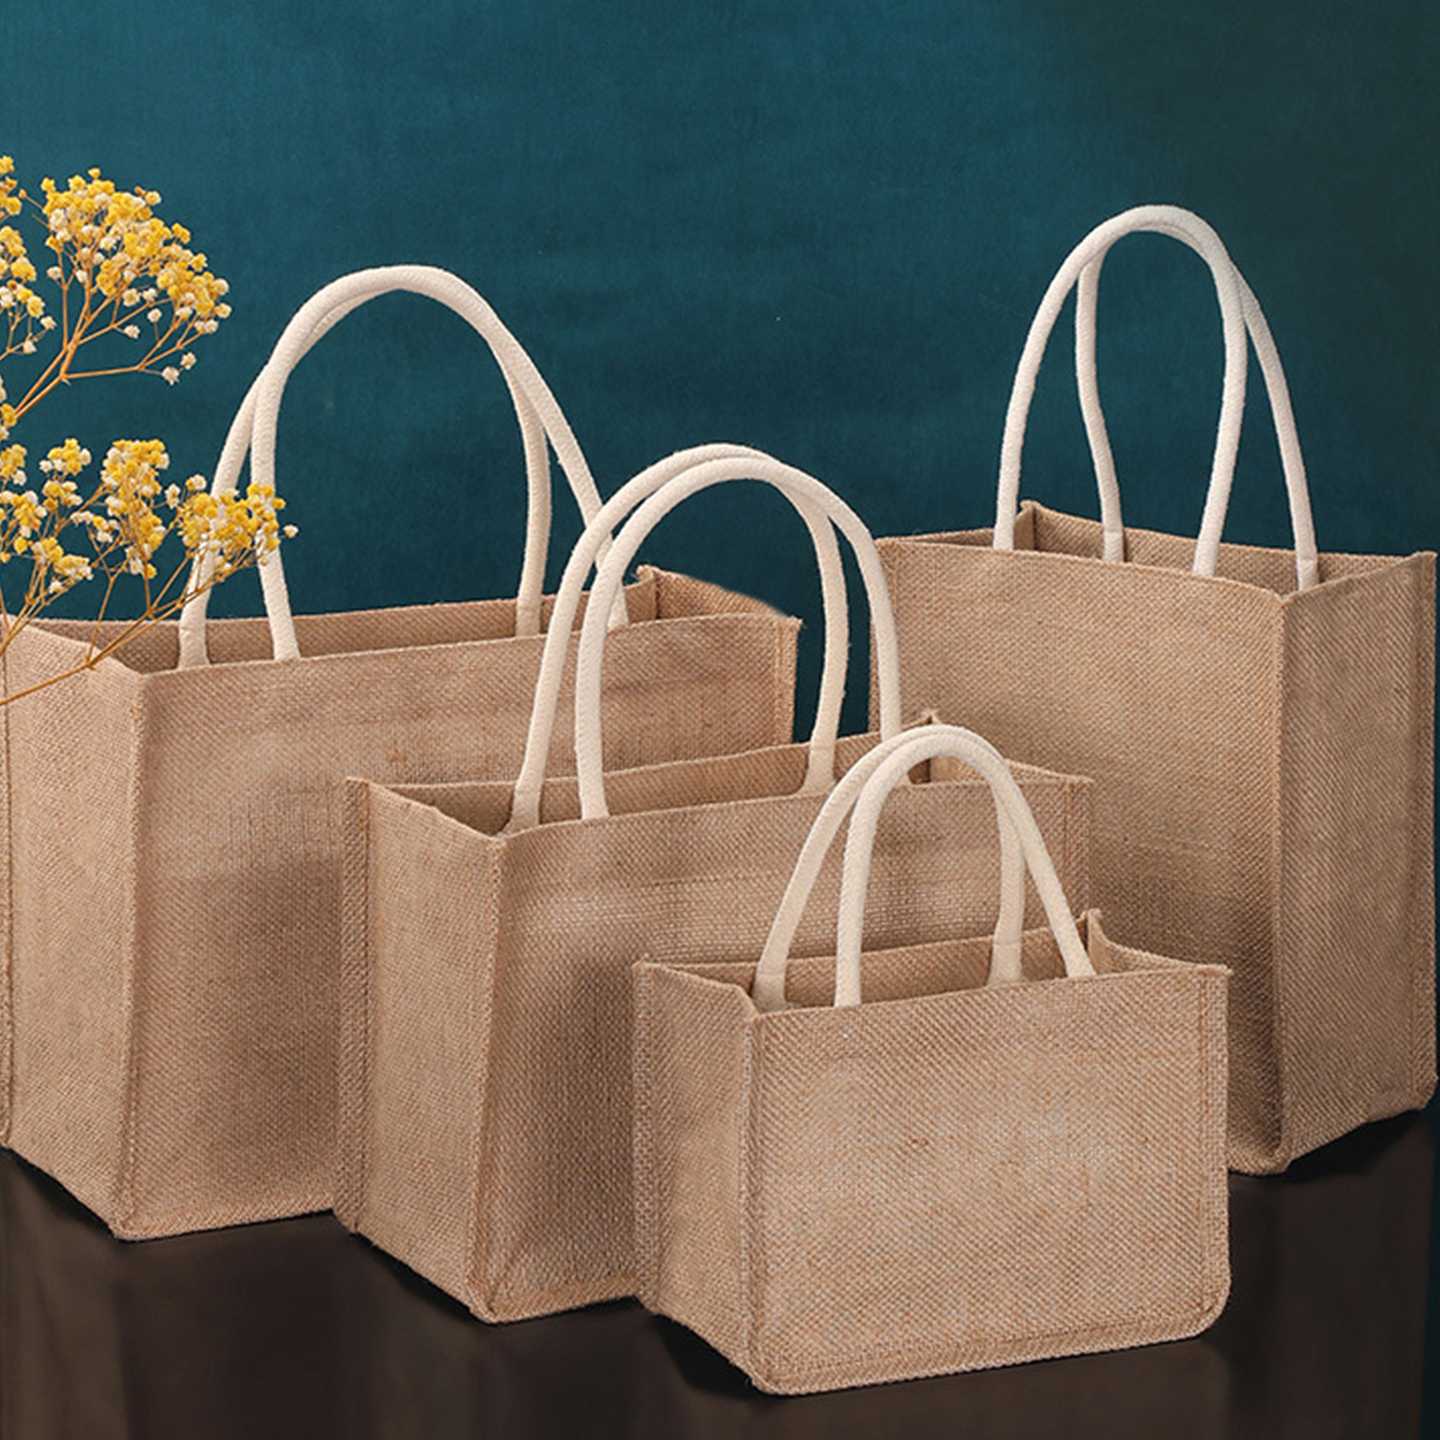 Tanie Torba Juta Shopper - ekologiczna torba na zakupy i prezent, …